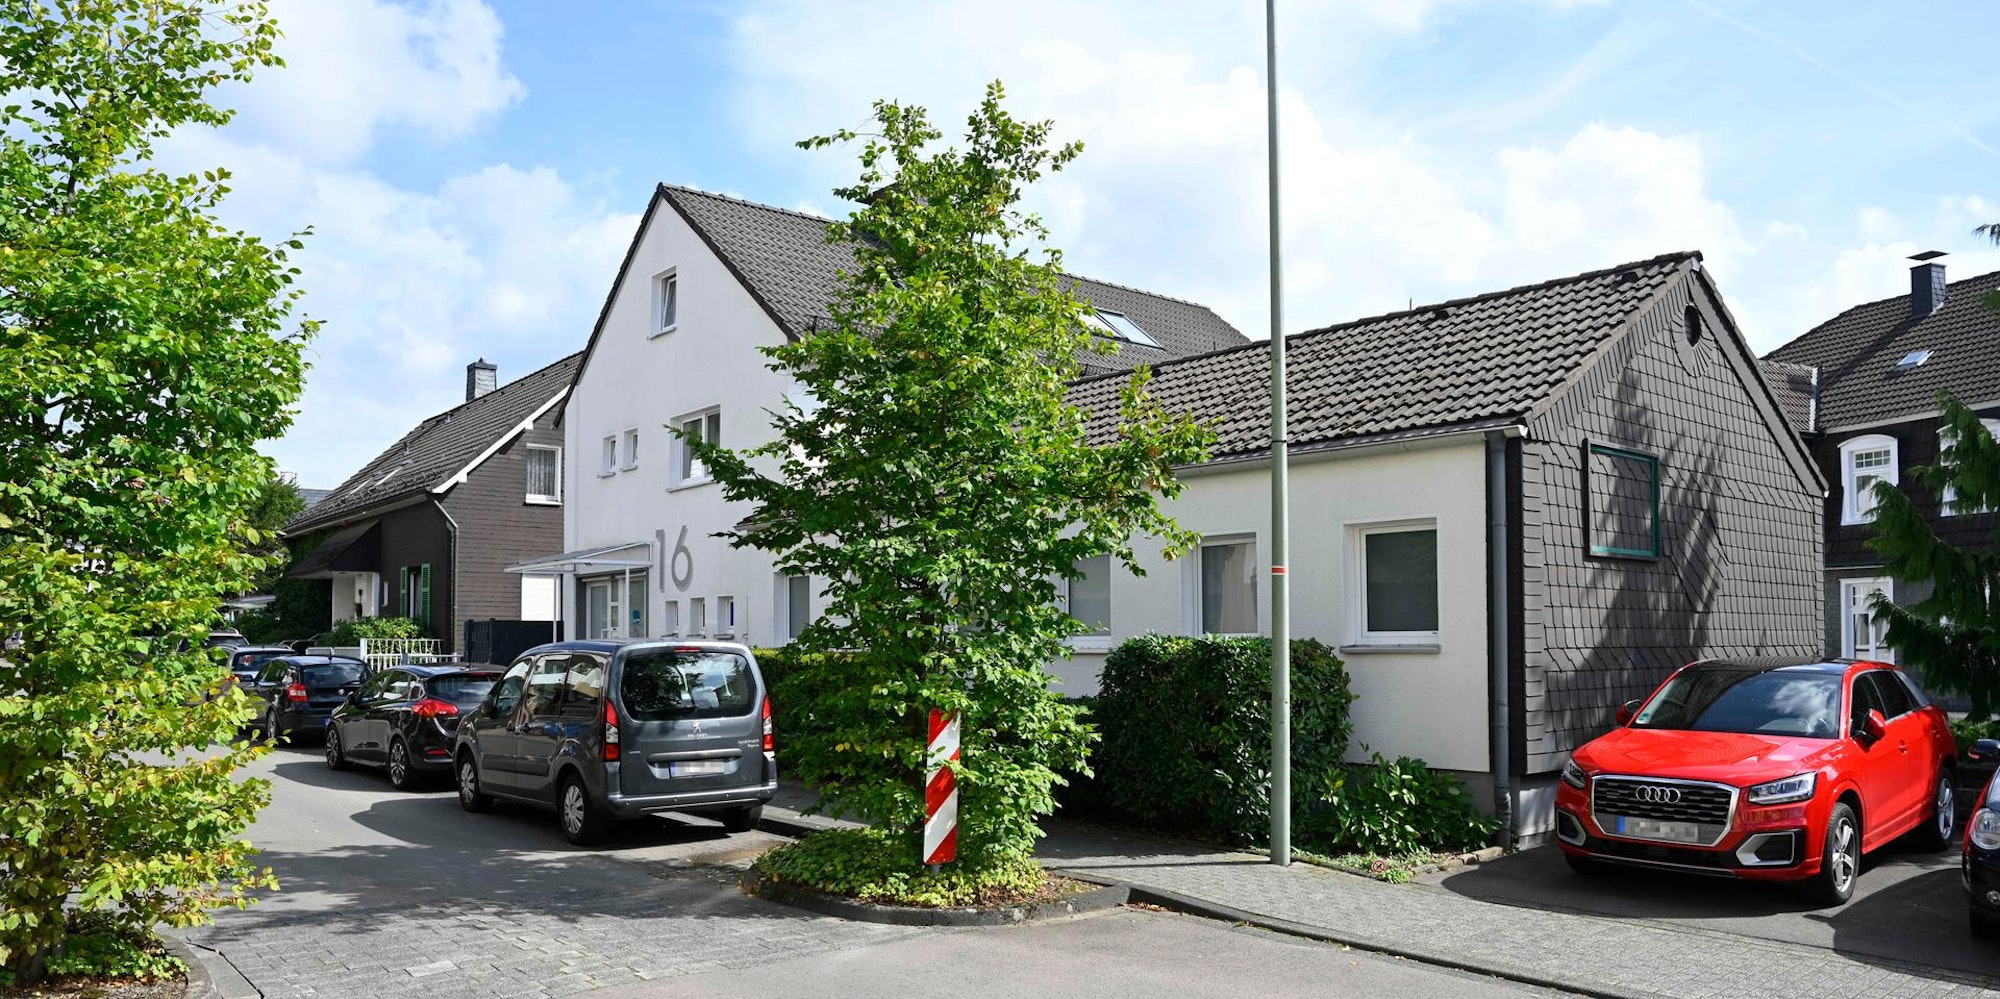 Der Beschluss zum Bau eines Verbandshauses an der Gummersbacher Grotenbachstraße wird im Januar 1957 gefasst. Dort ist der Verein auch heute noch zu finden.